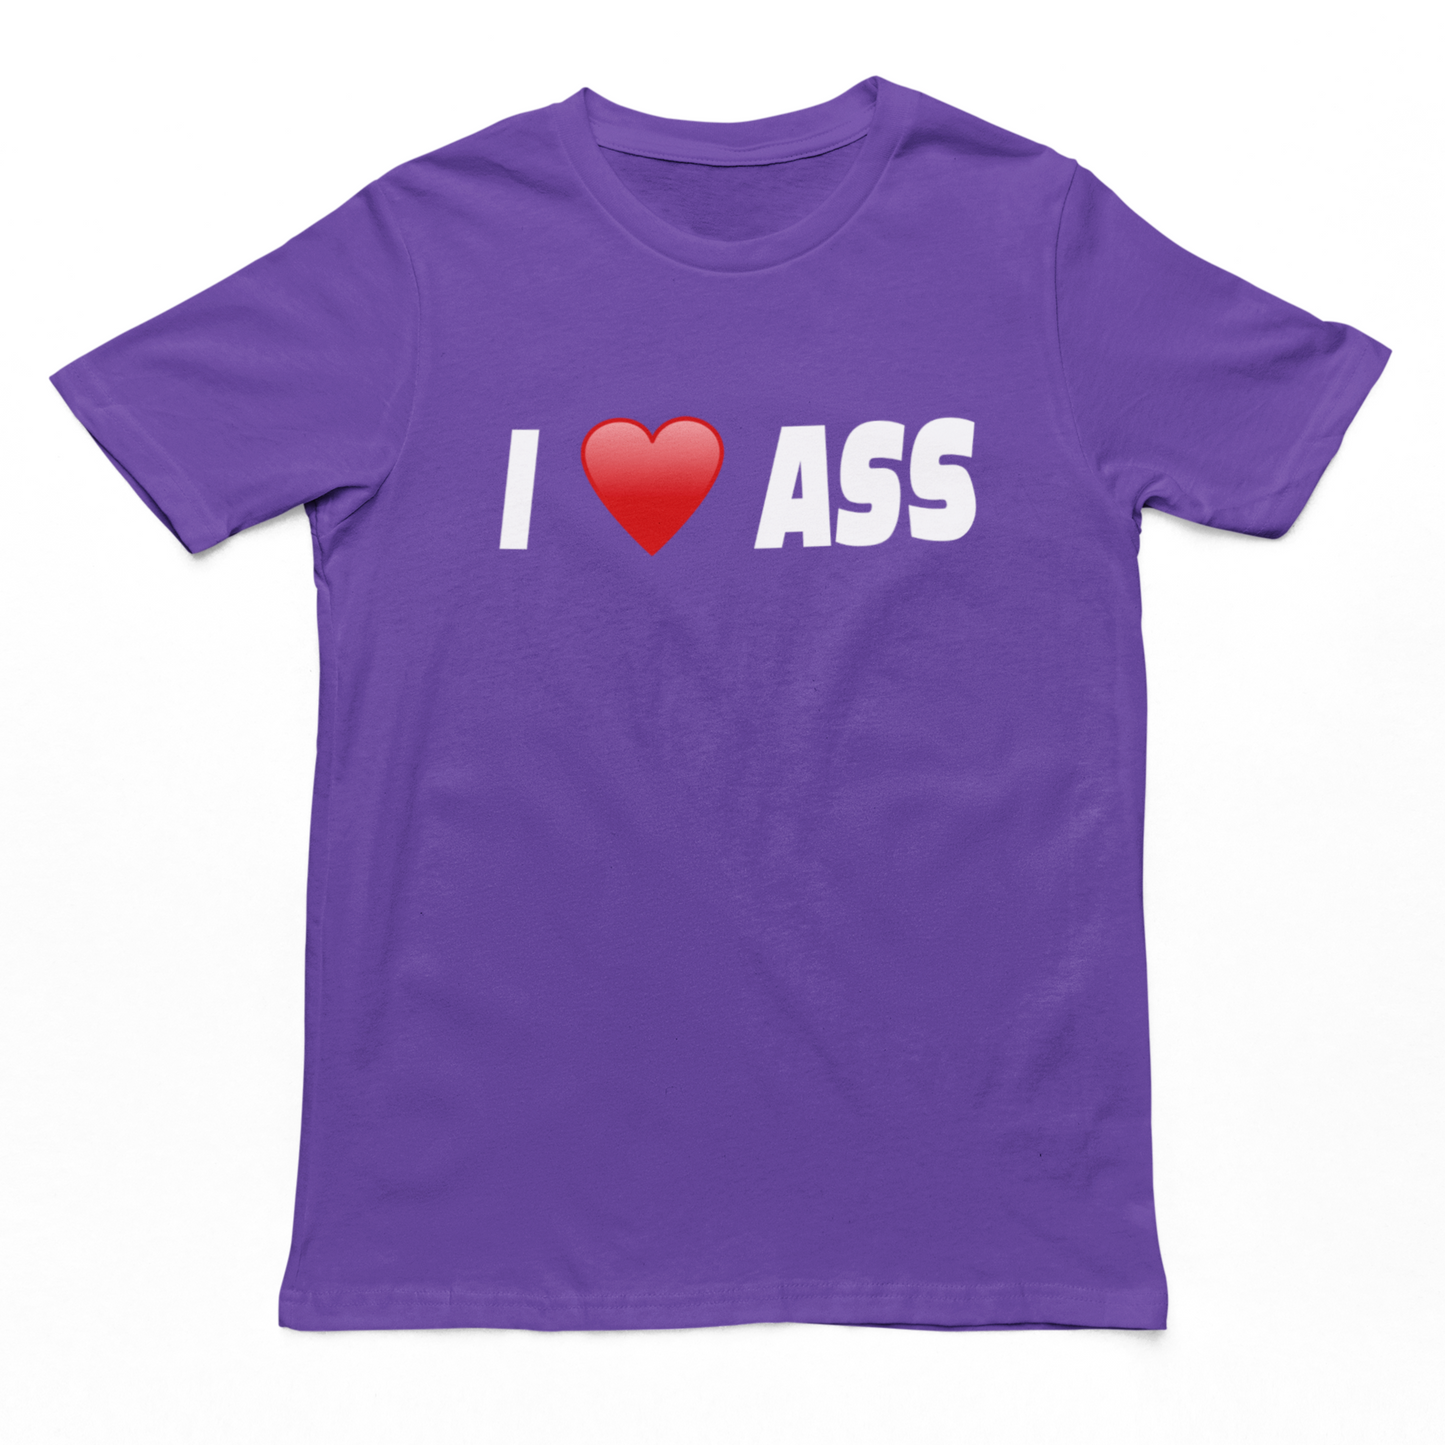 I Love Ass t-shirt